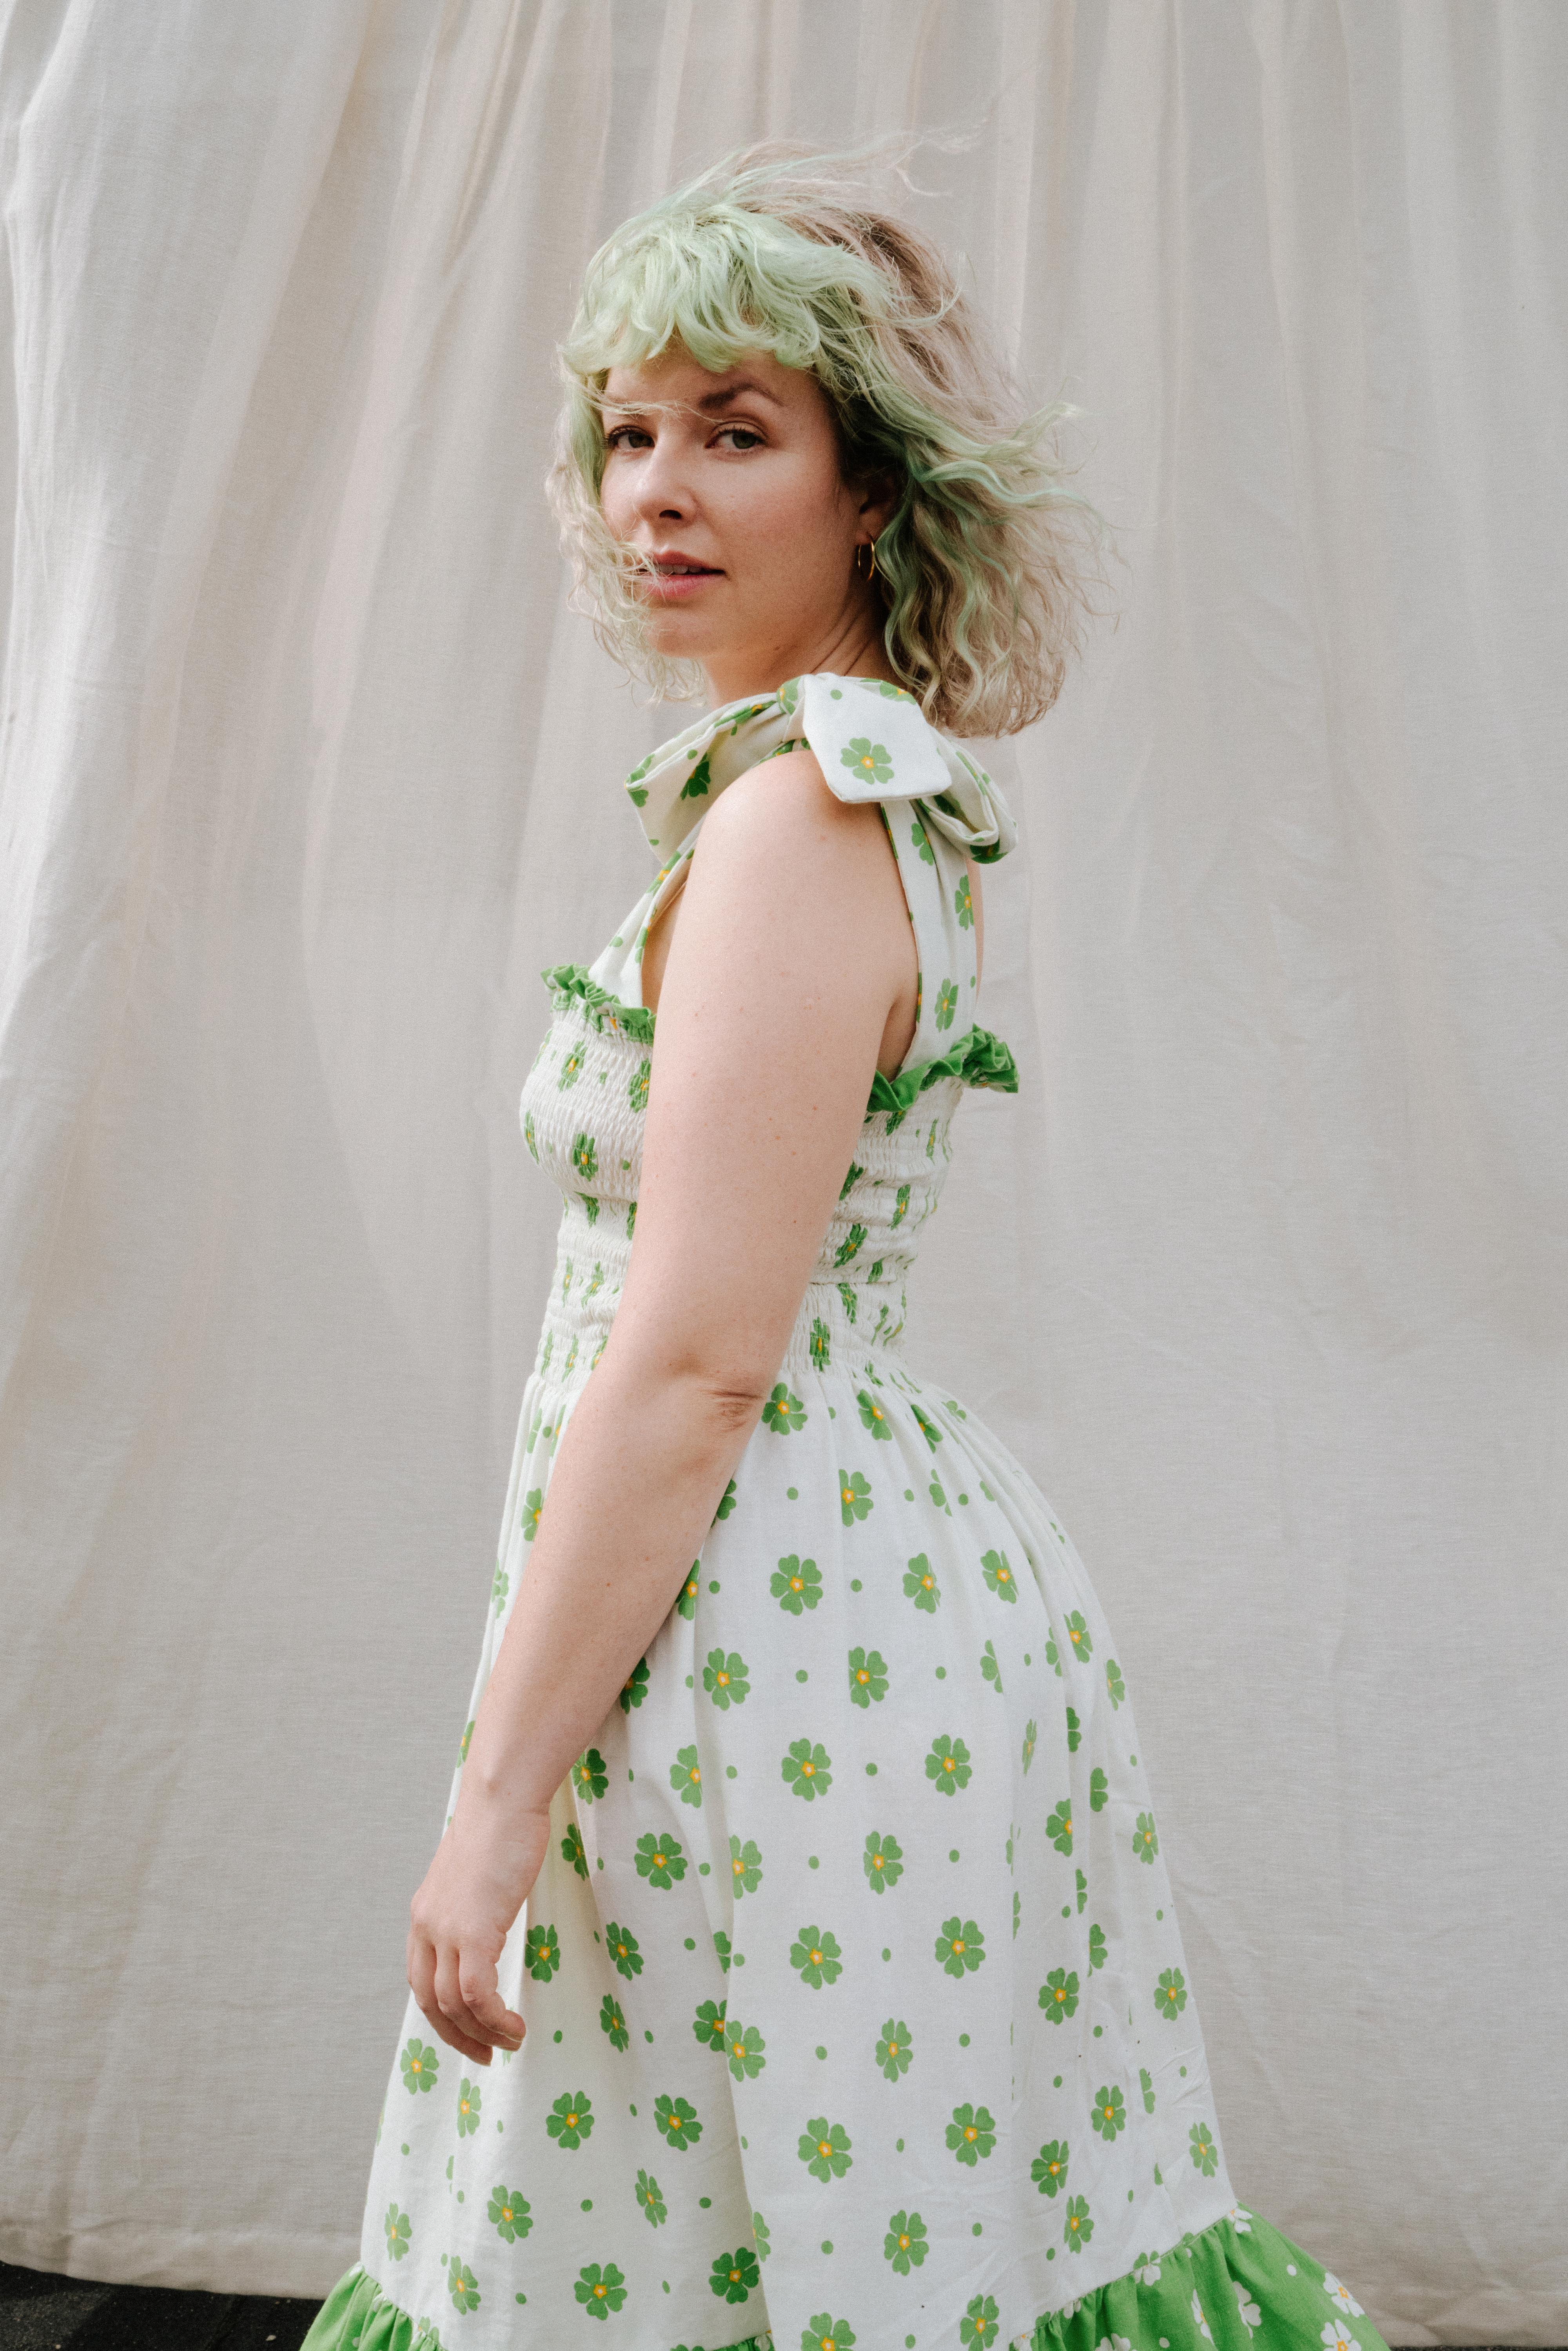 SELVSYDD ER VELSYDD: Her er Mari Nordén kledd opp i selvsydd kjole med mønster fra samarbeidet mellom MinMote og Fæbrik. 